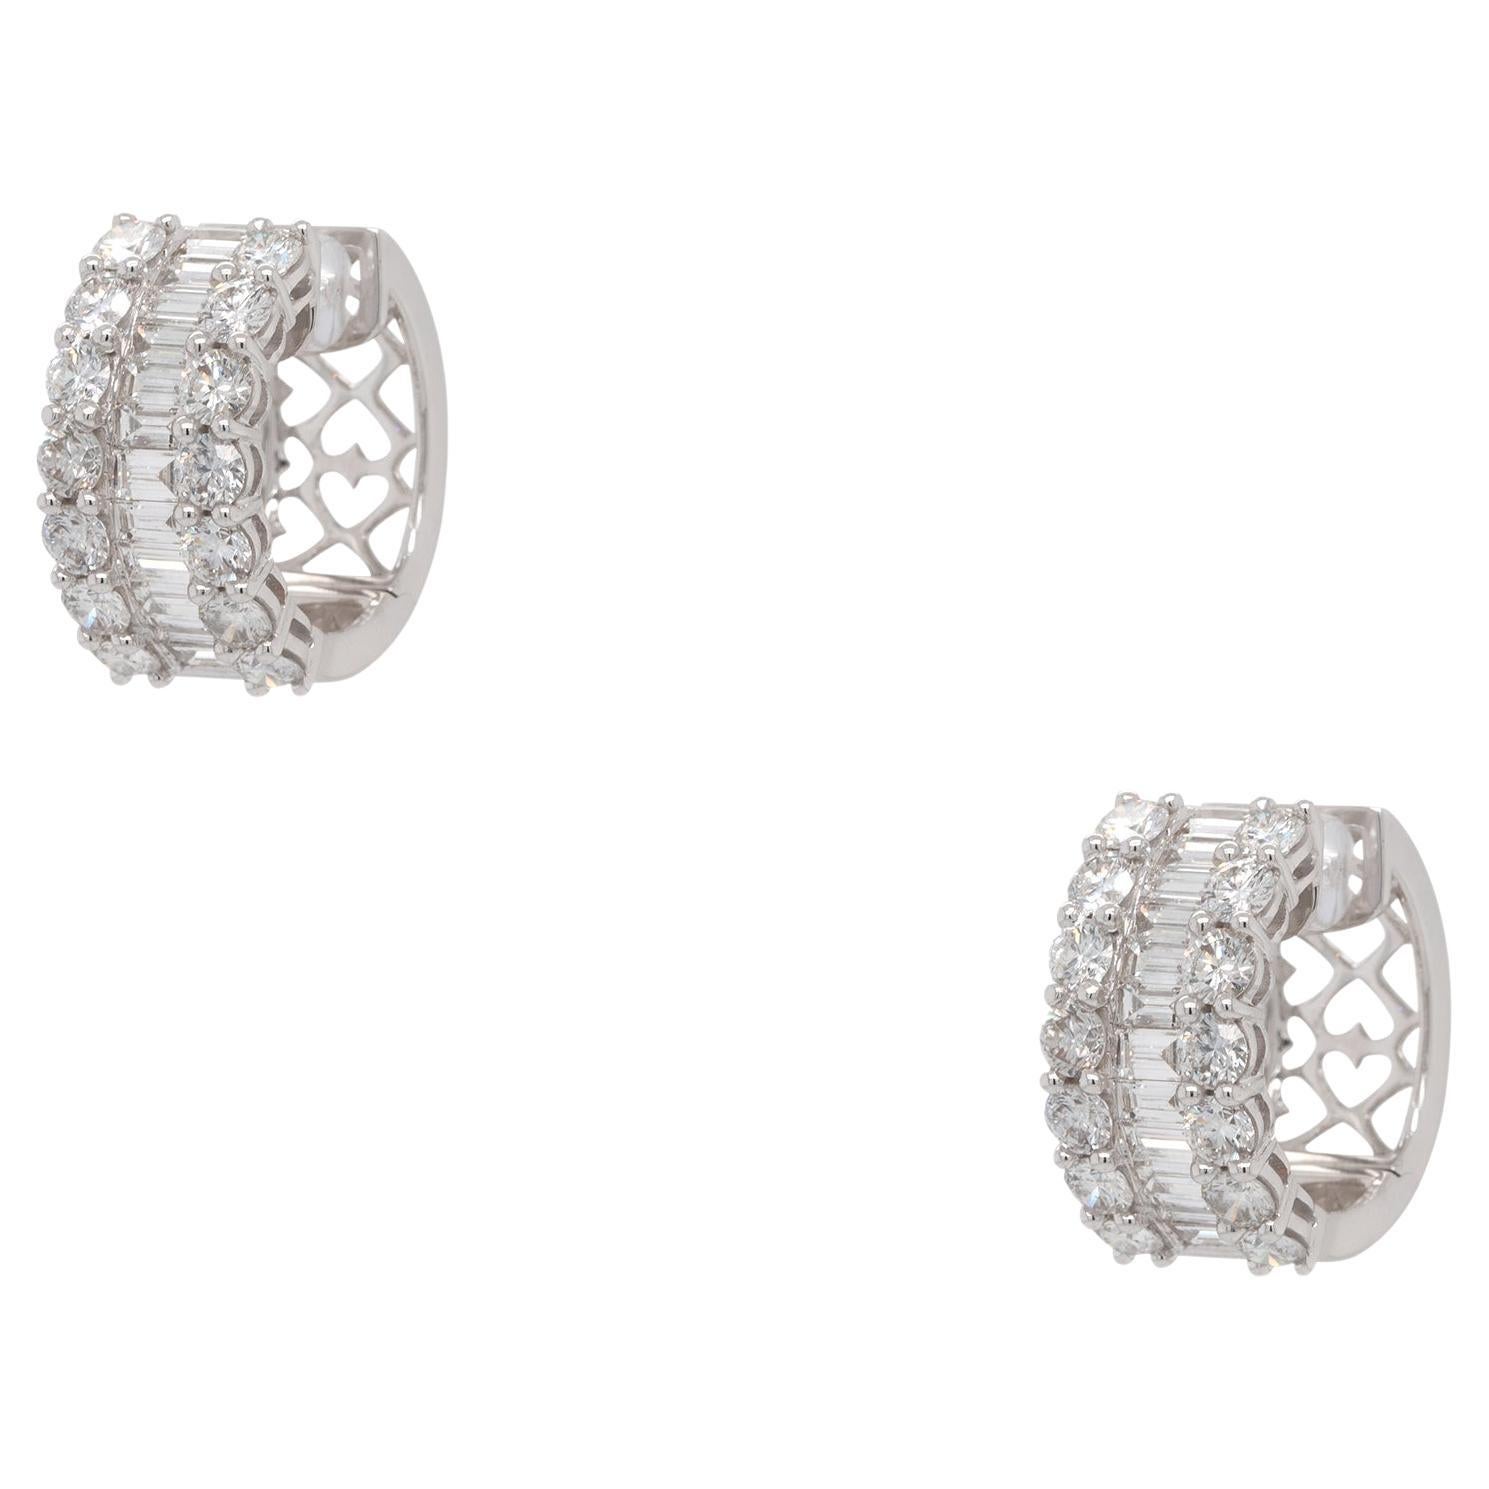 6.19 Carat Diamond Wide Hoop Earrings 18 Karat In Stock For Sale